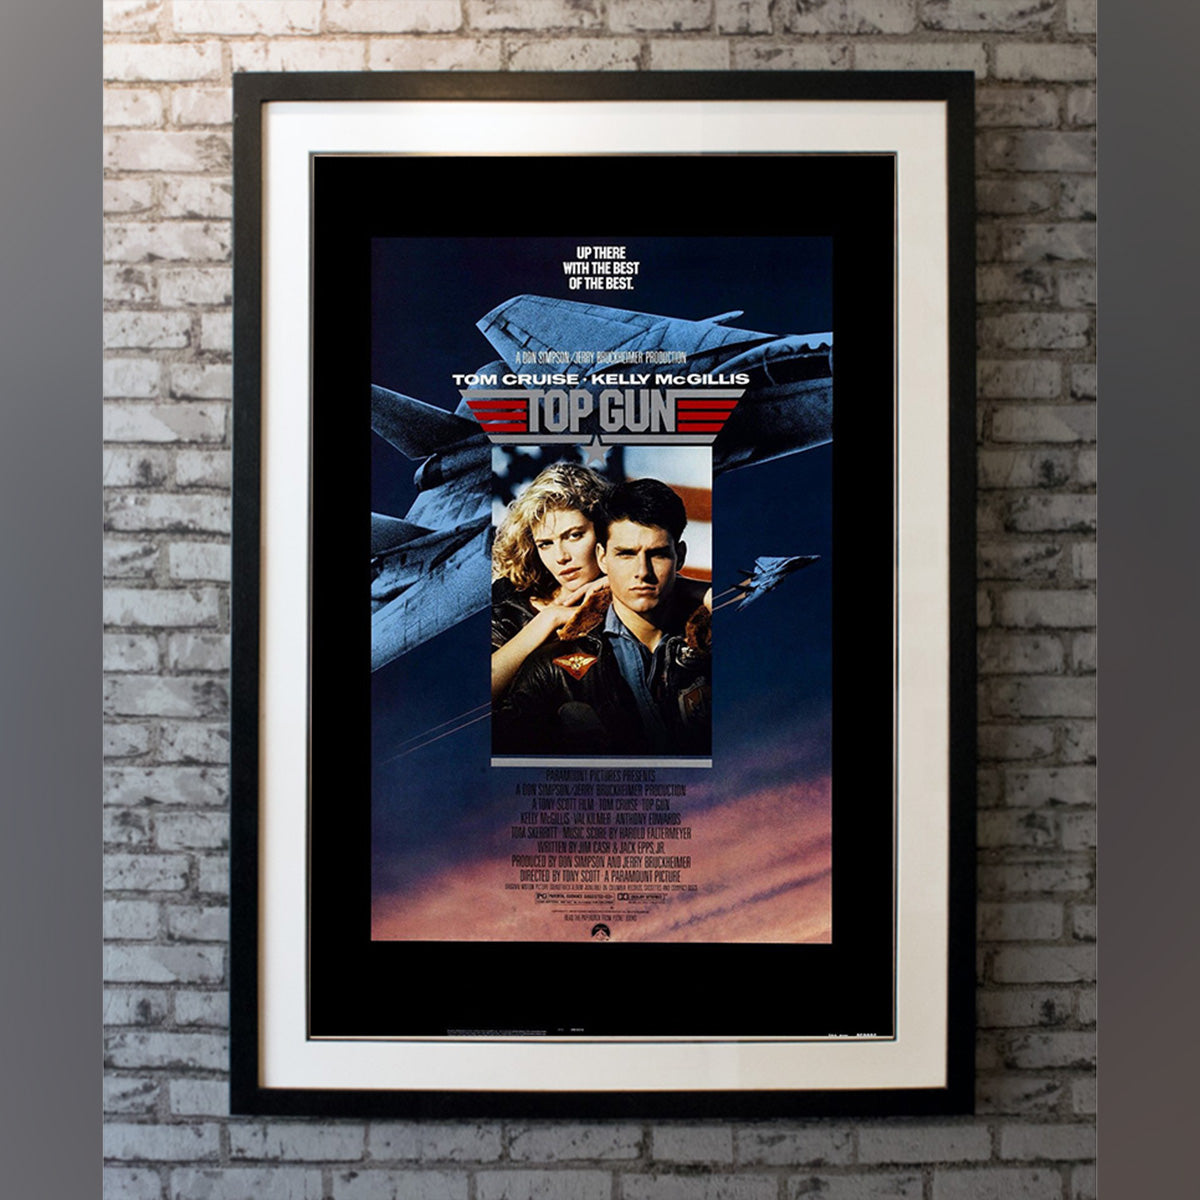 Original Movie Poster of Top Gun (1986)